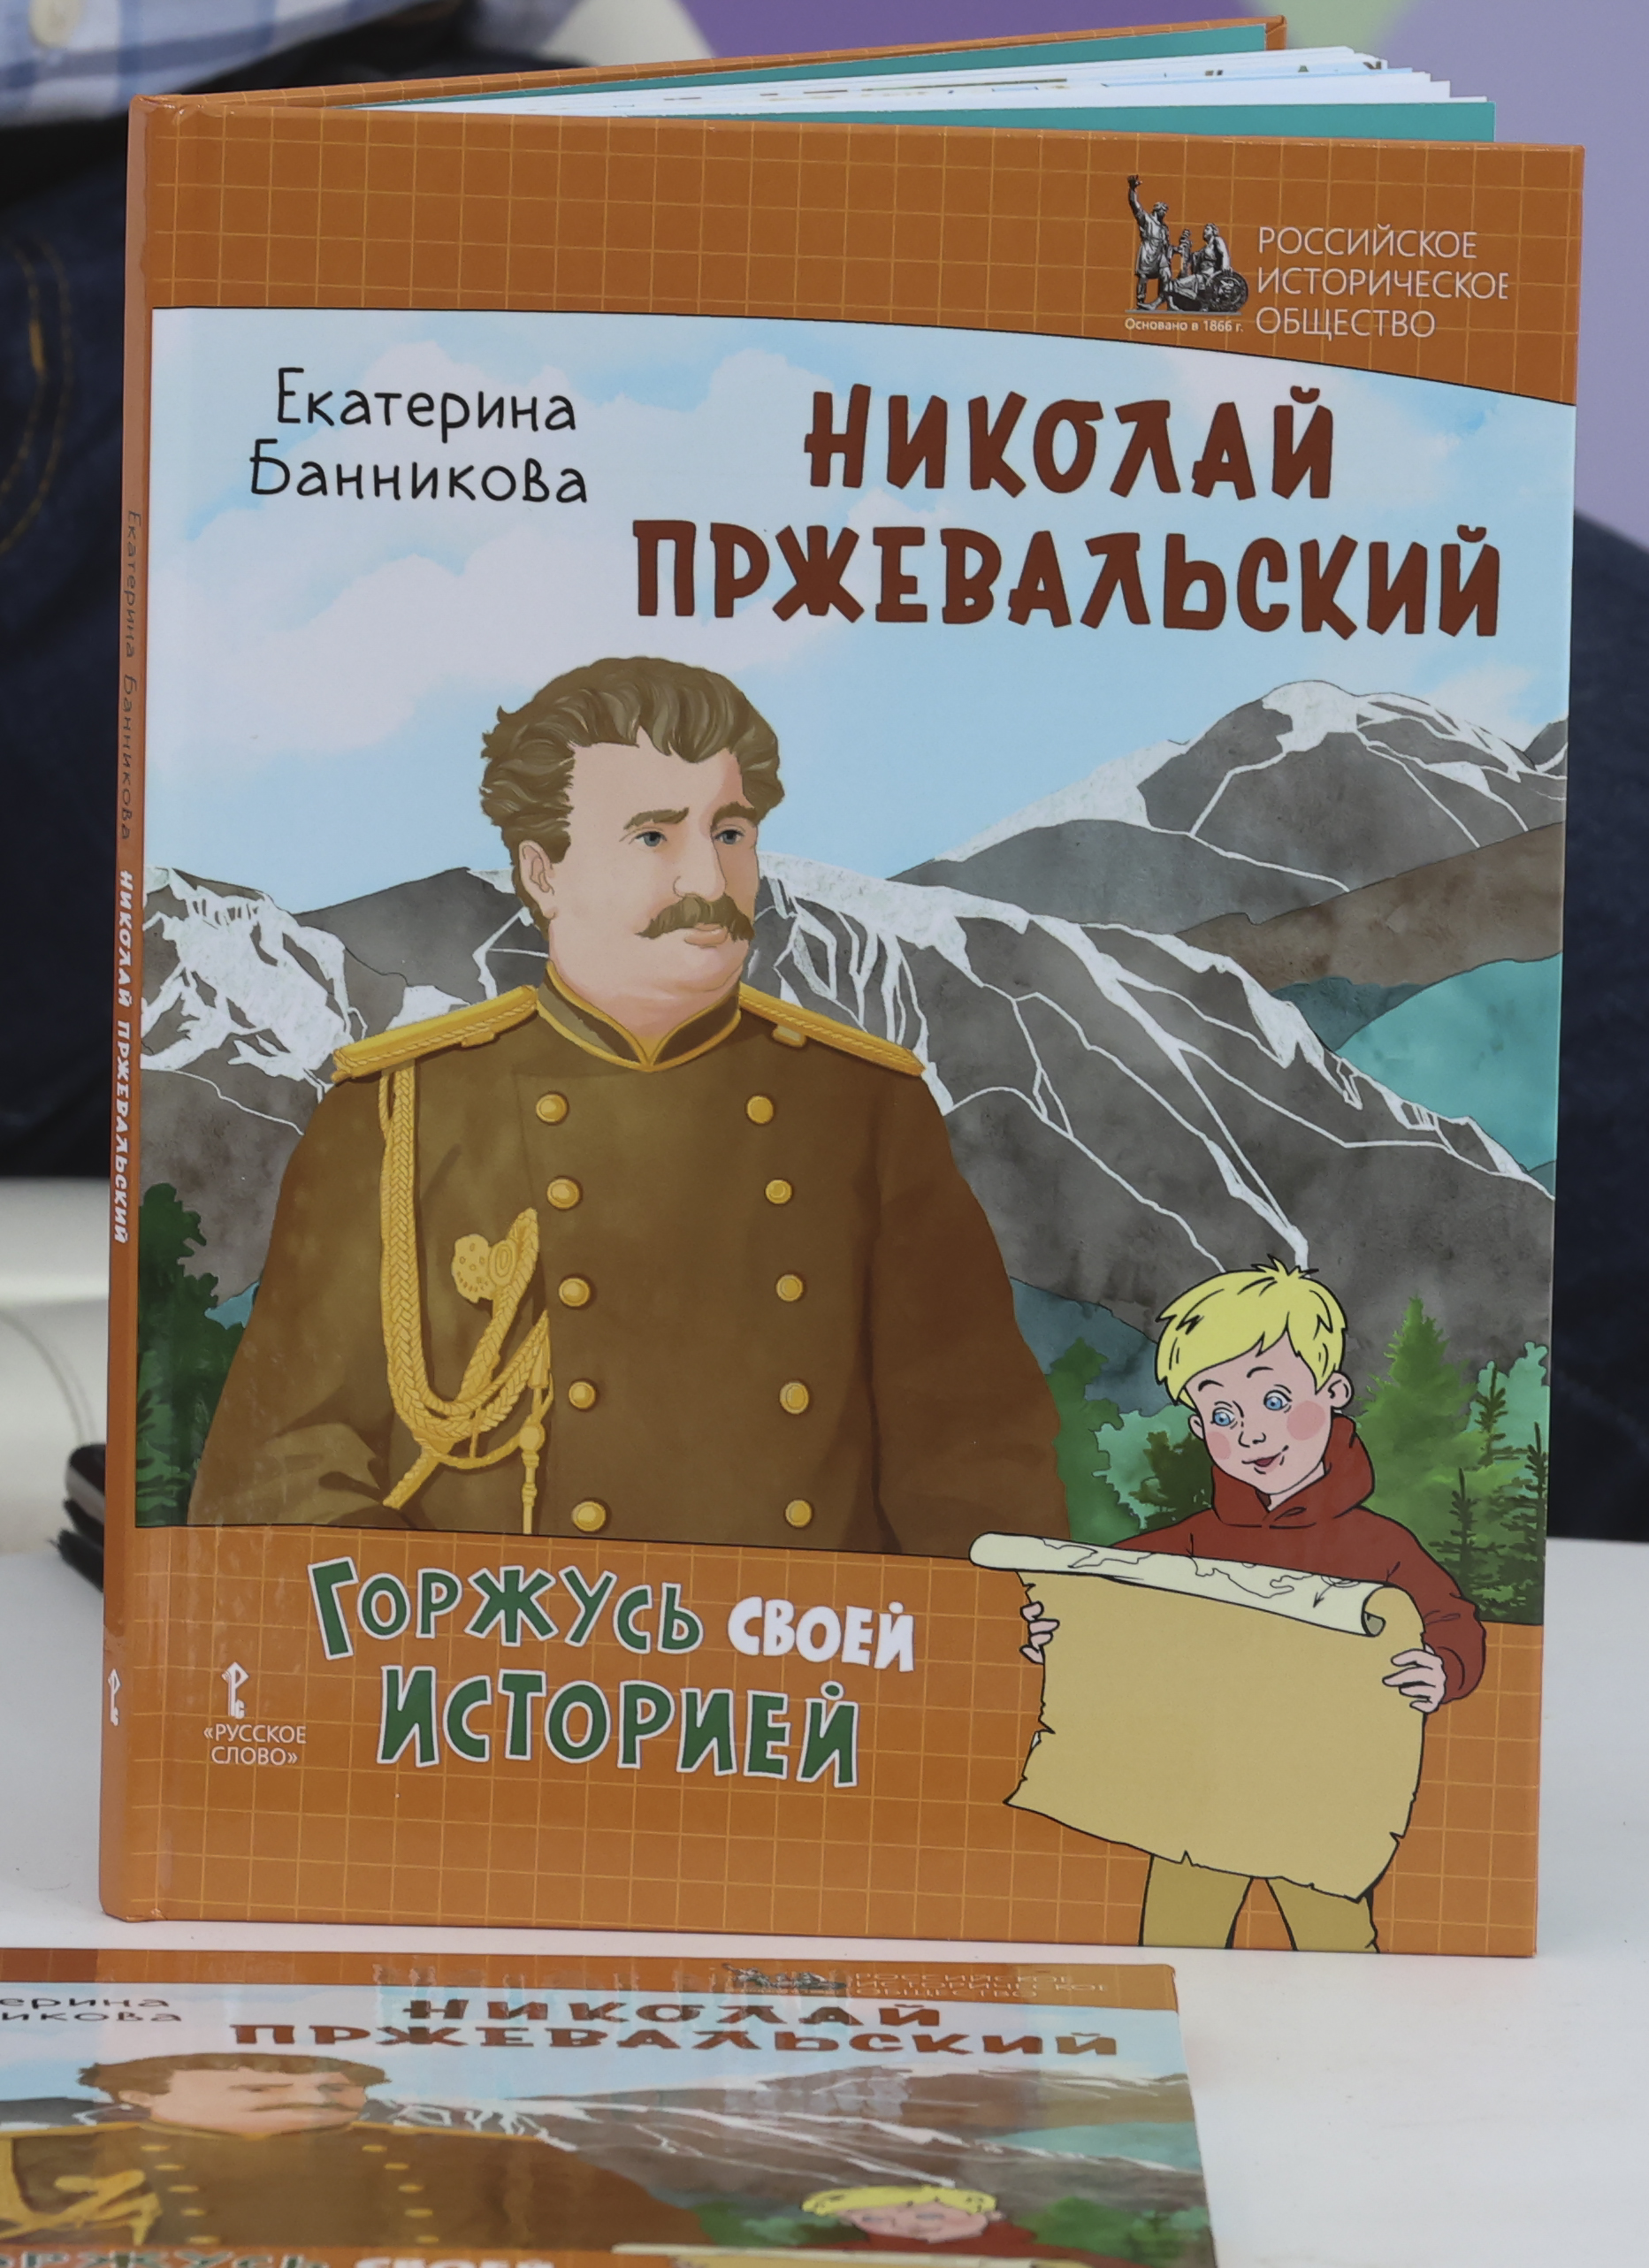 В павильоне «История Отечества» состоялась презентация книг издательства «Русское слово»